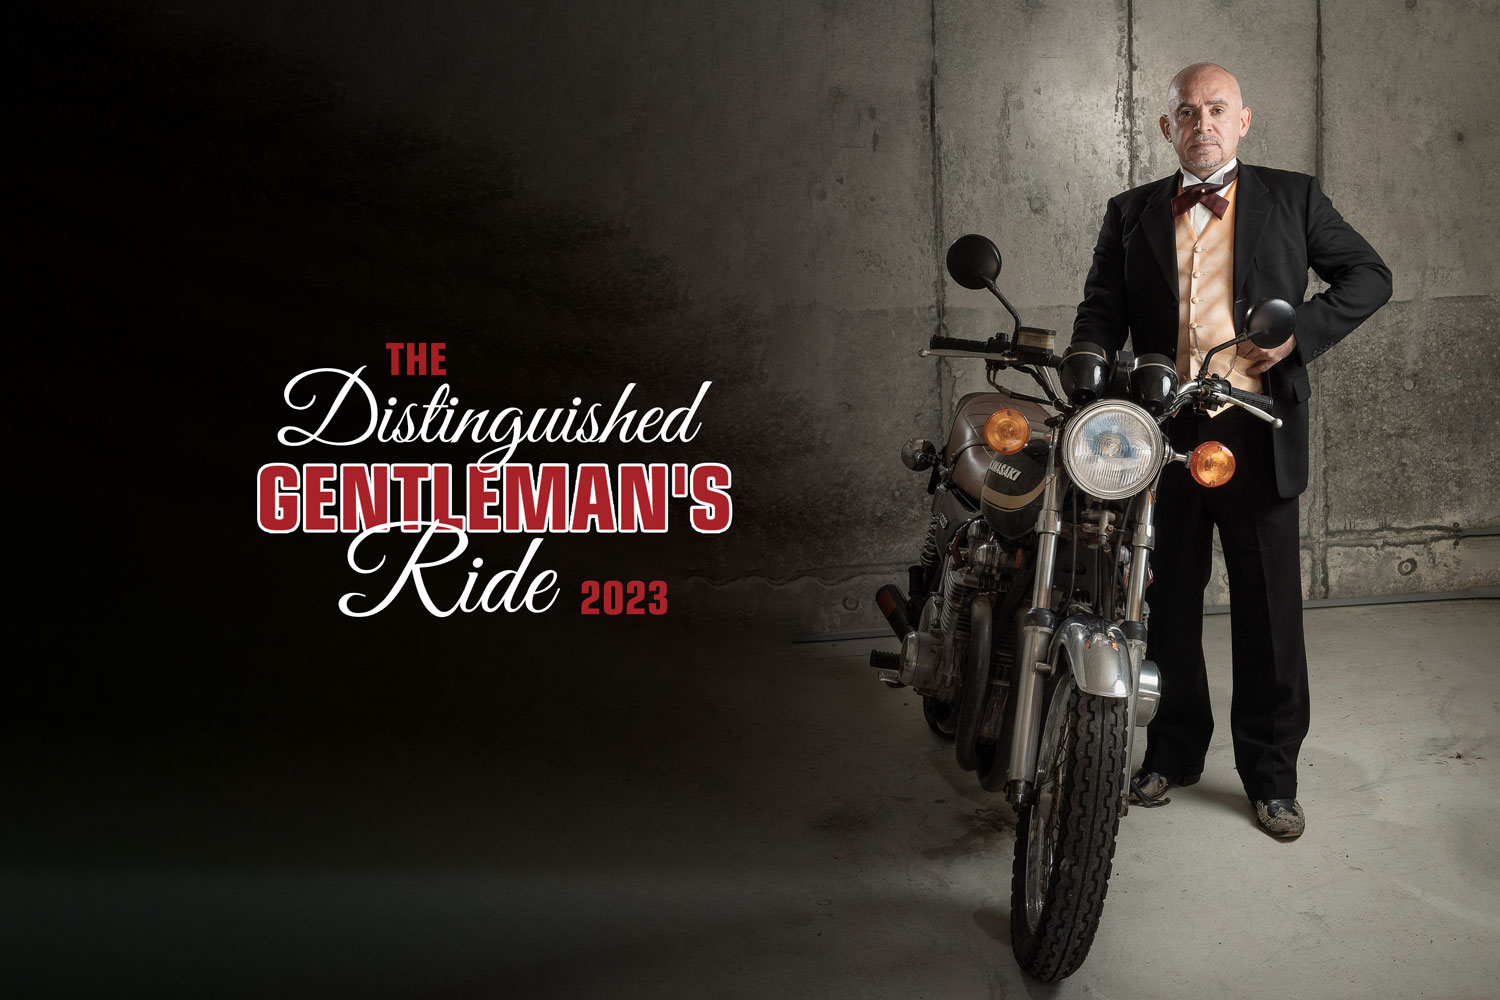 Rendez-vous pour The Distinguished Gentleman's Ride 2023 !